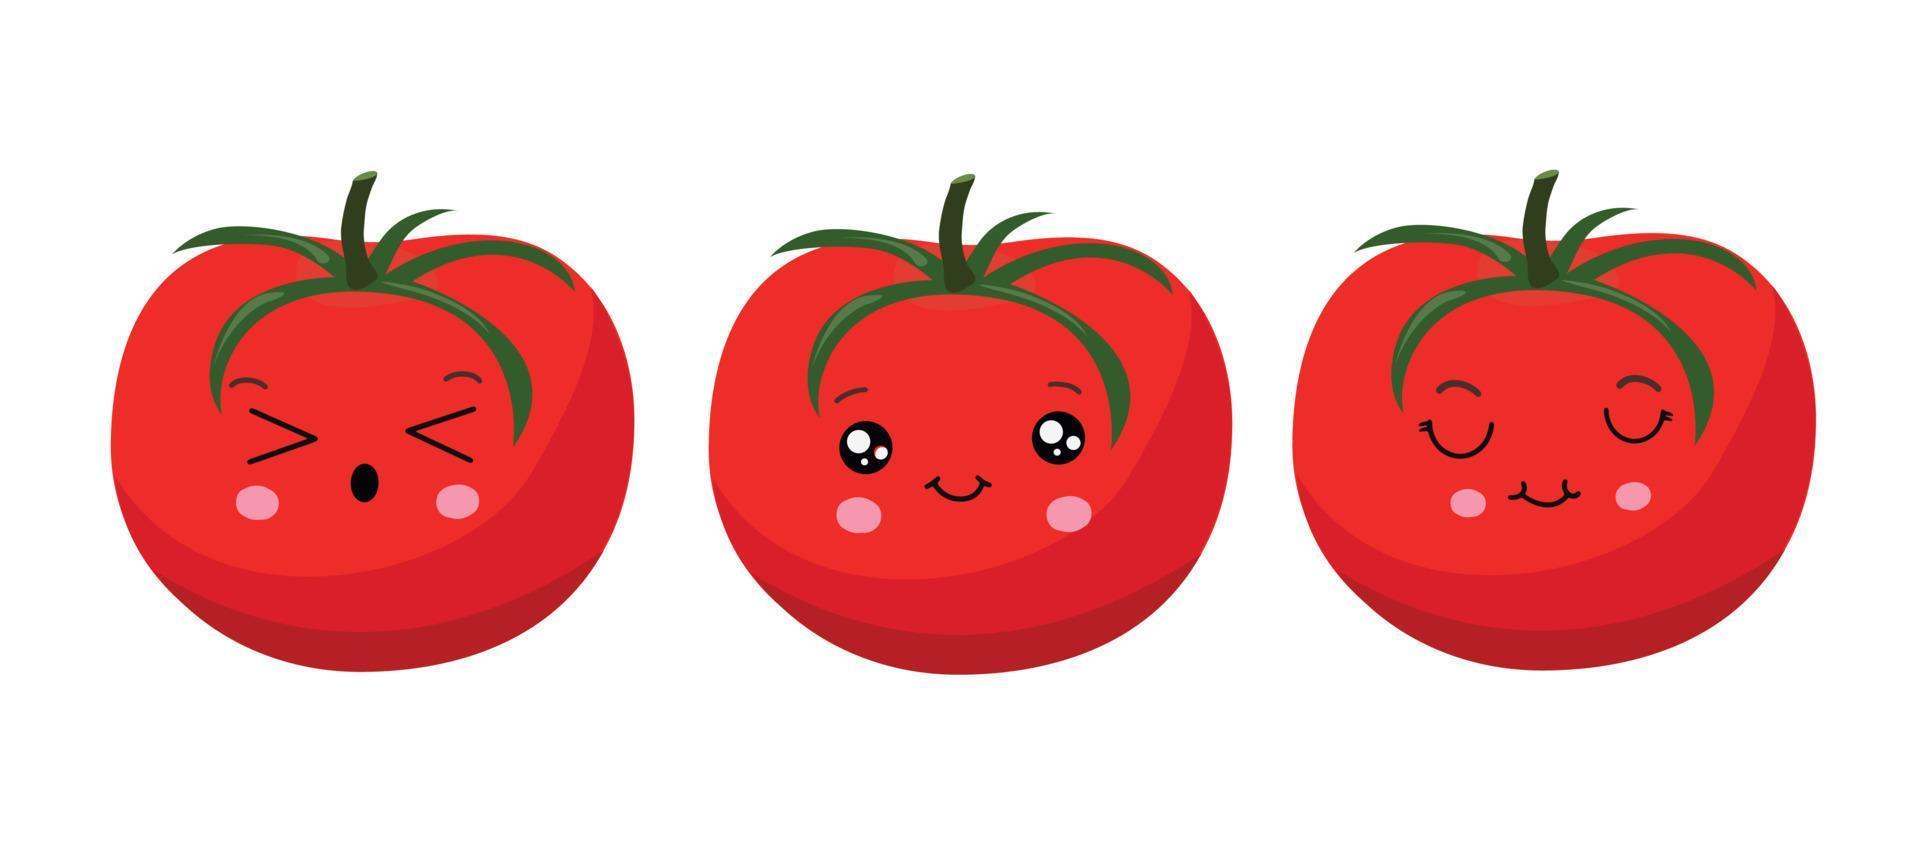 röd tomat i söt stil. vektor illustration